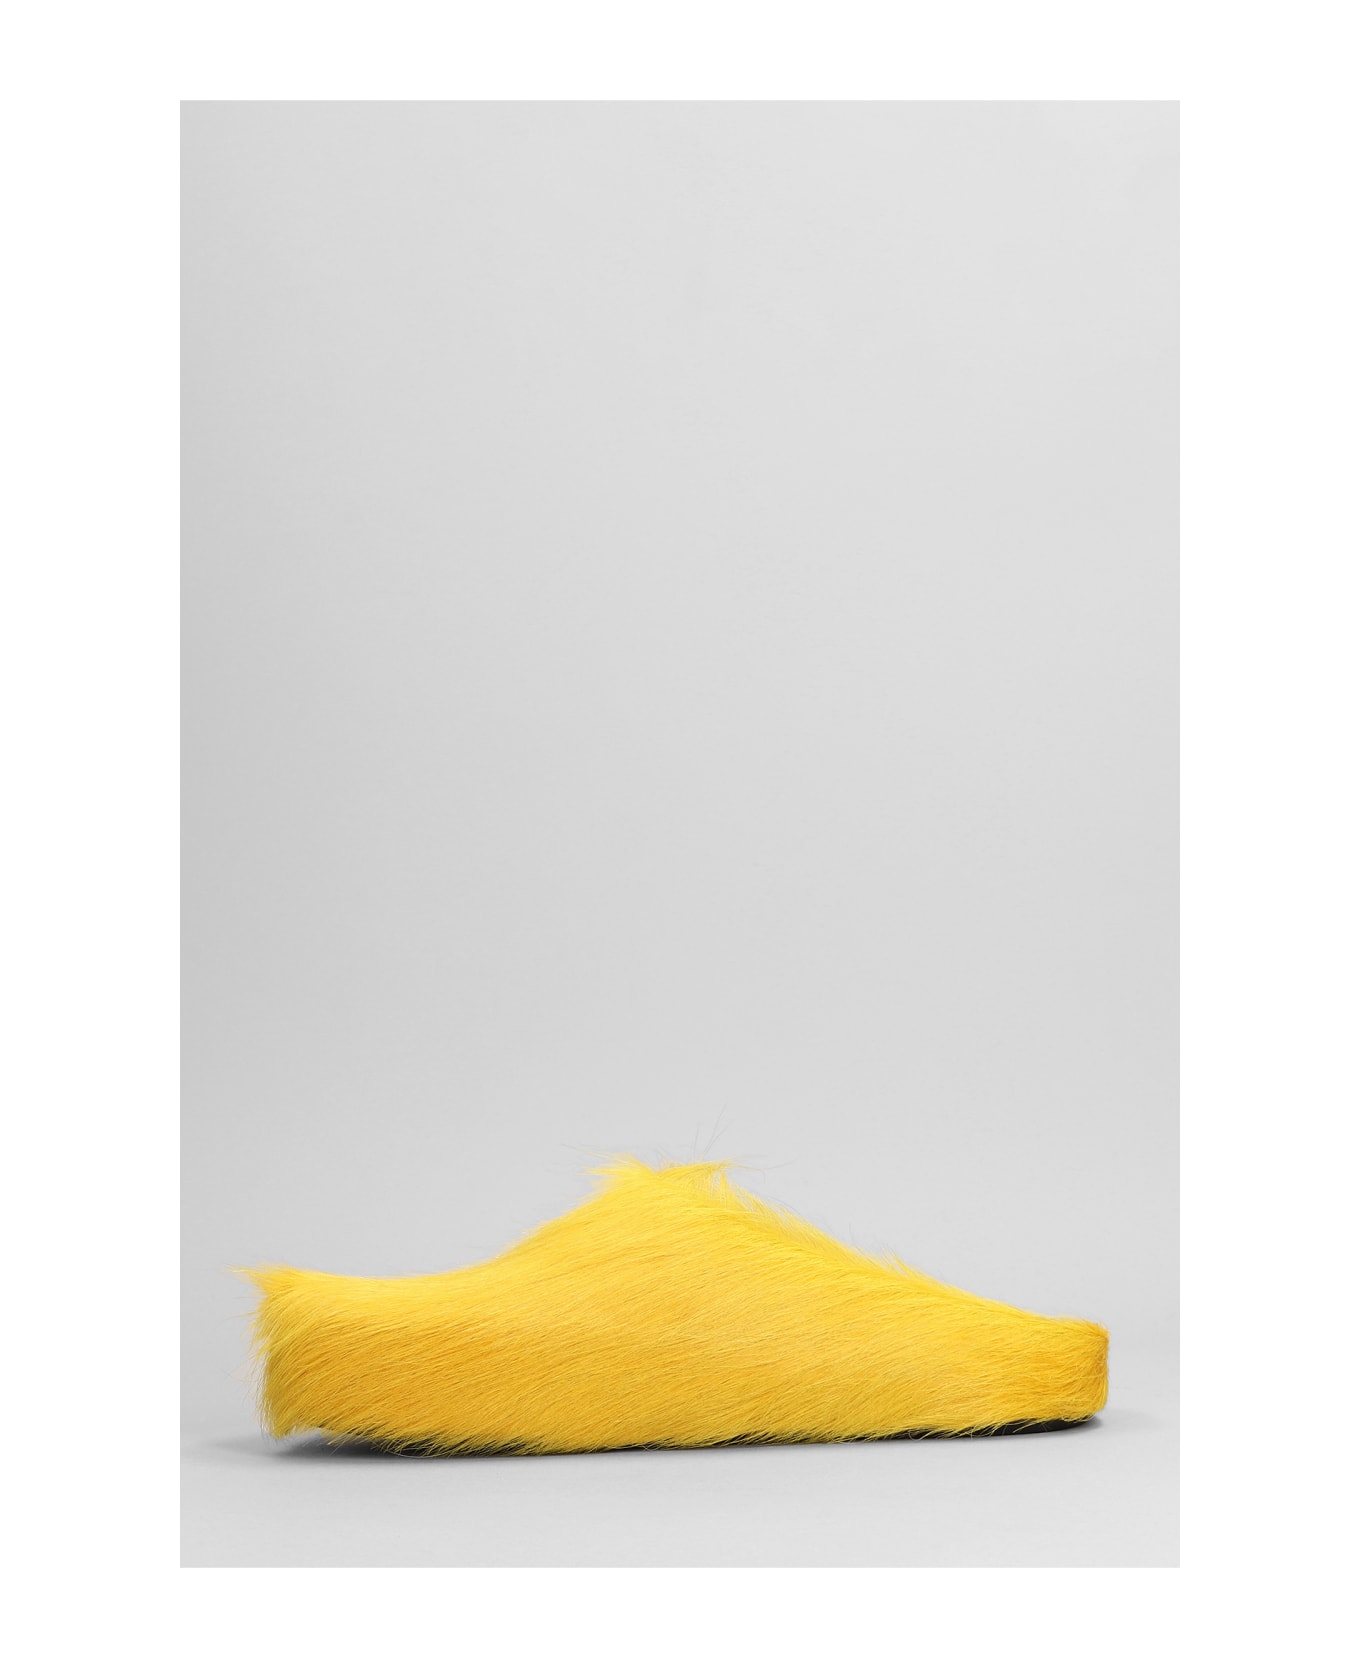 Marni Slipper-mule In Yellow Leather - yellow